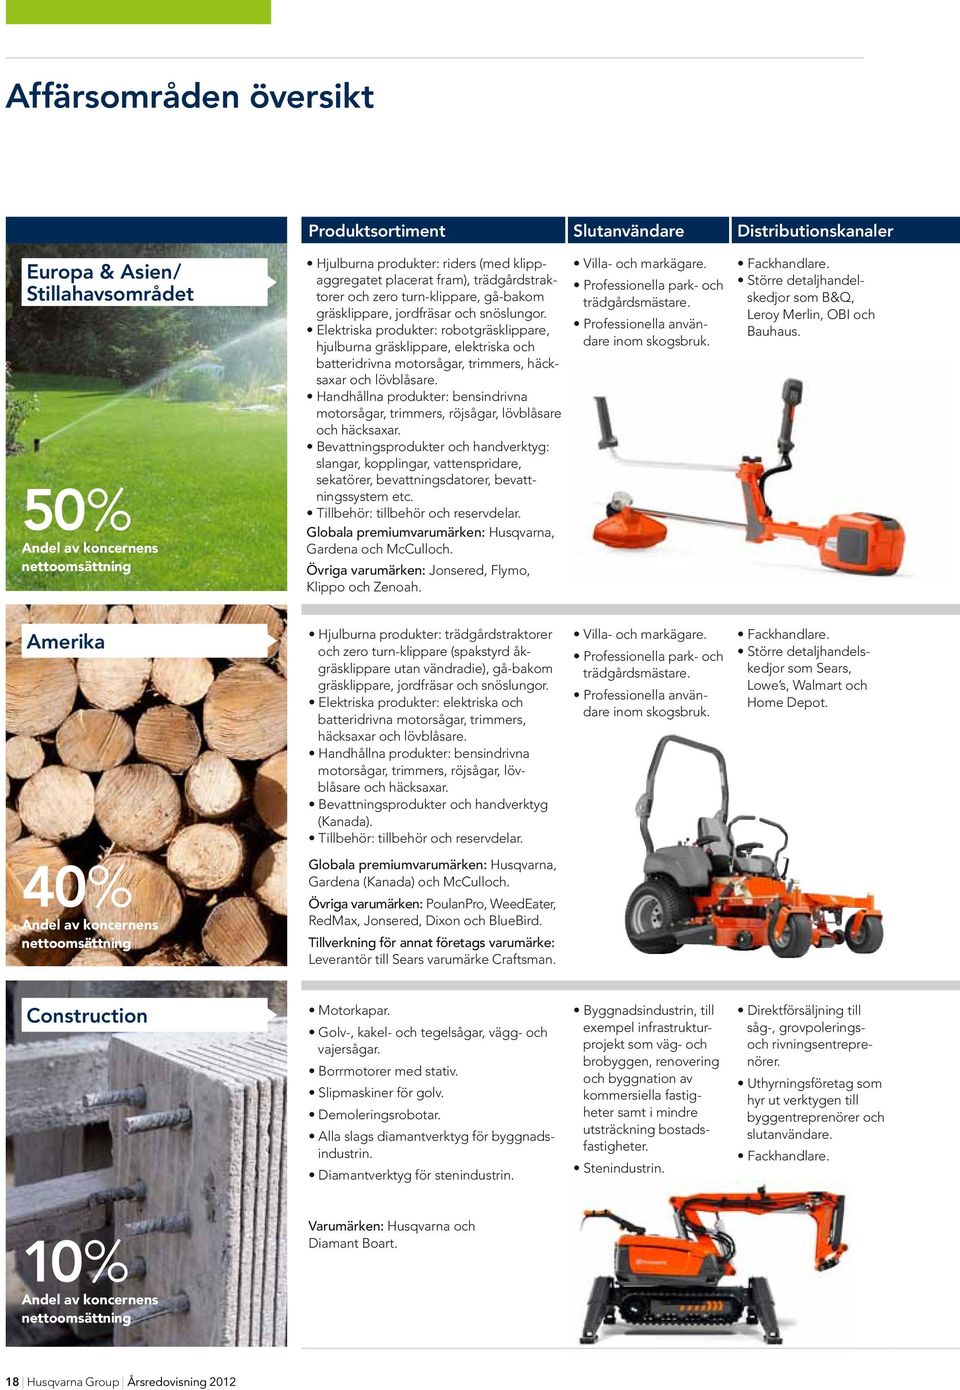 Elektriska produkter: robotgräsklippare, hjulburna gräsklippare, elektriska och batteridrivna motorsågar, trimmers, häcksaxar och lövblåsare.